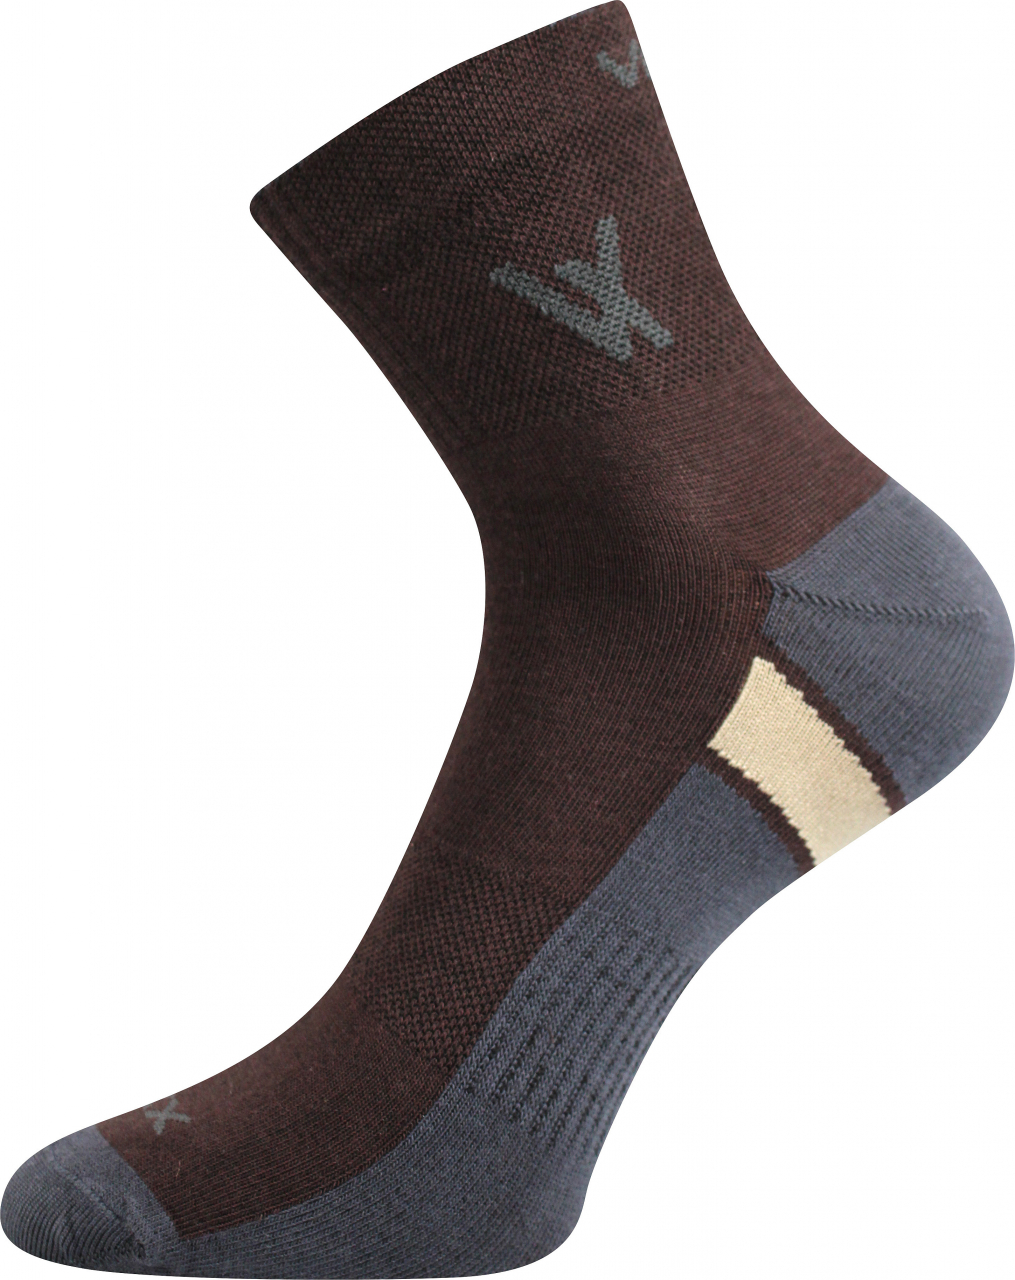 Ponožky sportovní Voxx Neo - hnědé, 35-38